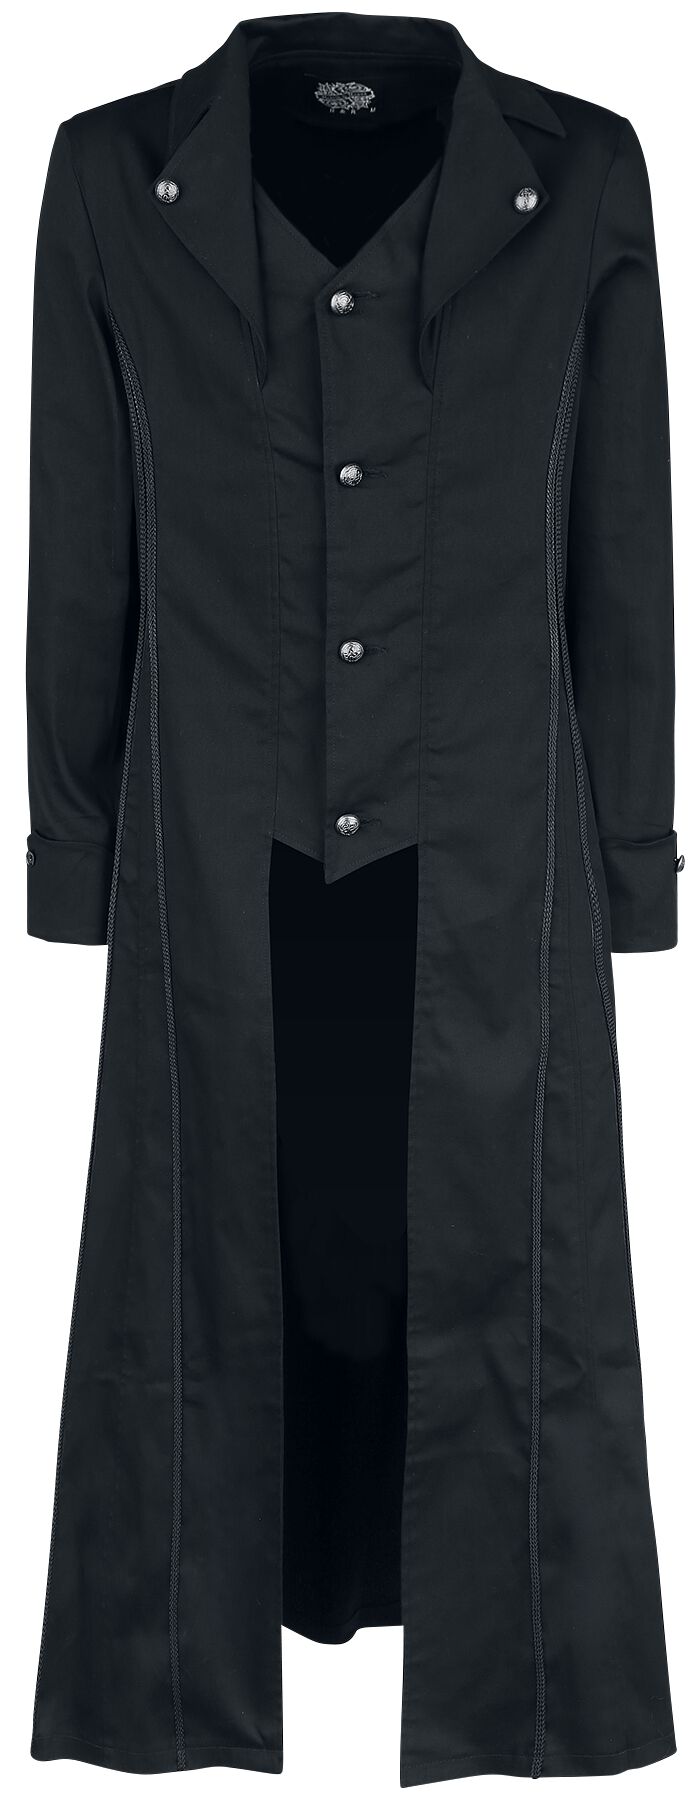 Image of Cappotto in stile militare Gothic di H&R London - Black Classic Coat - S a XXL - Uomo - nero